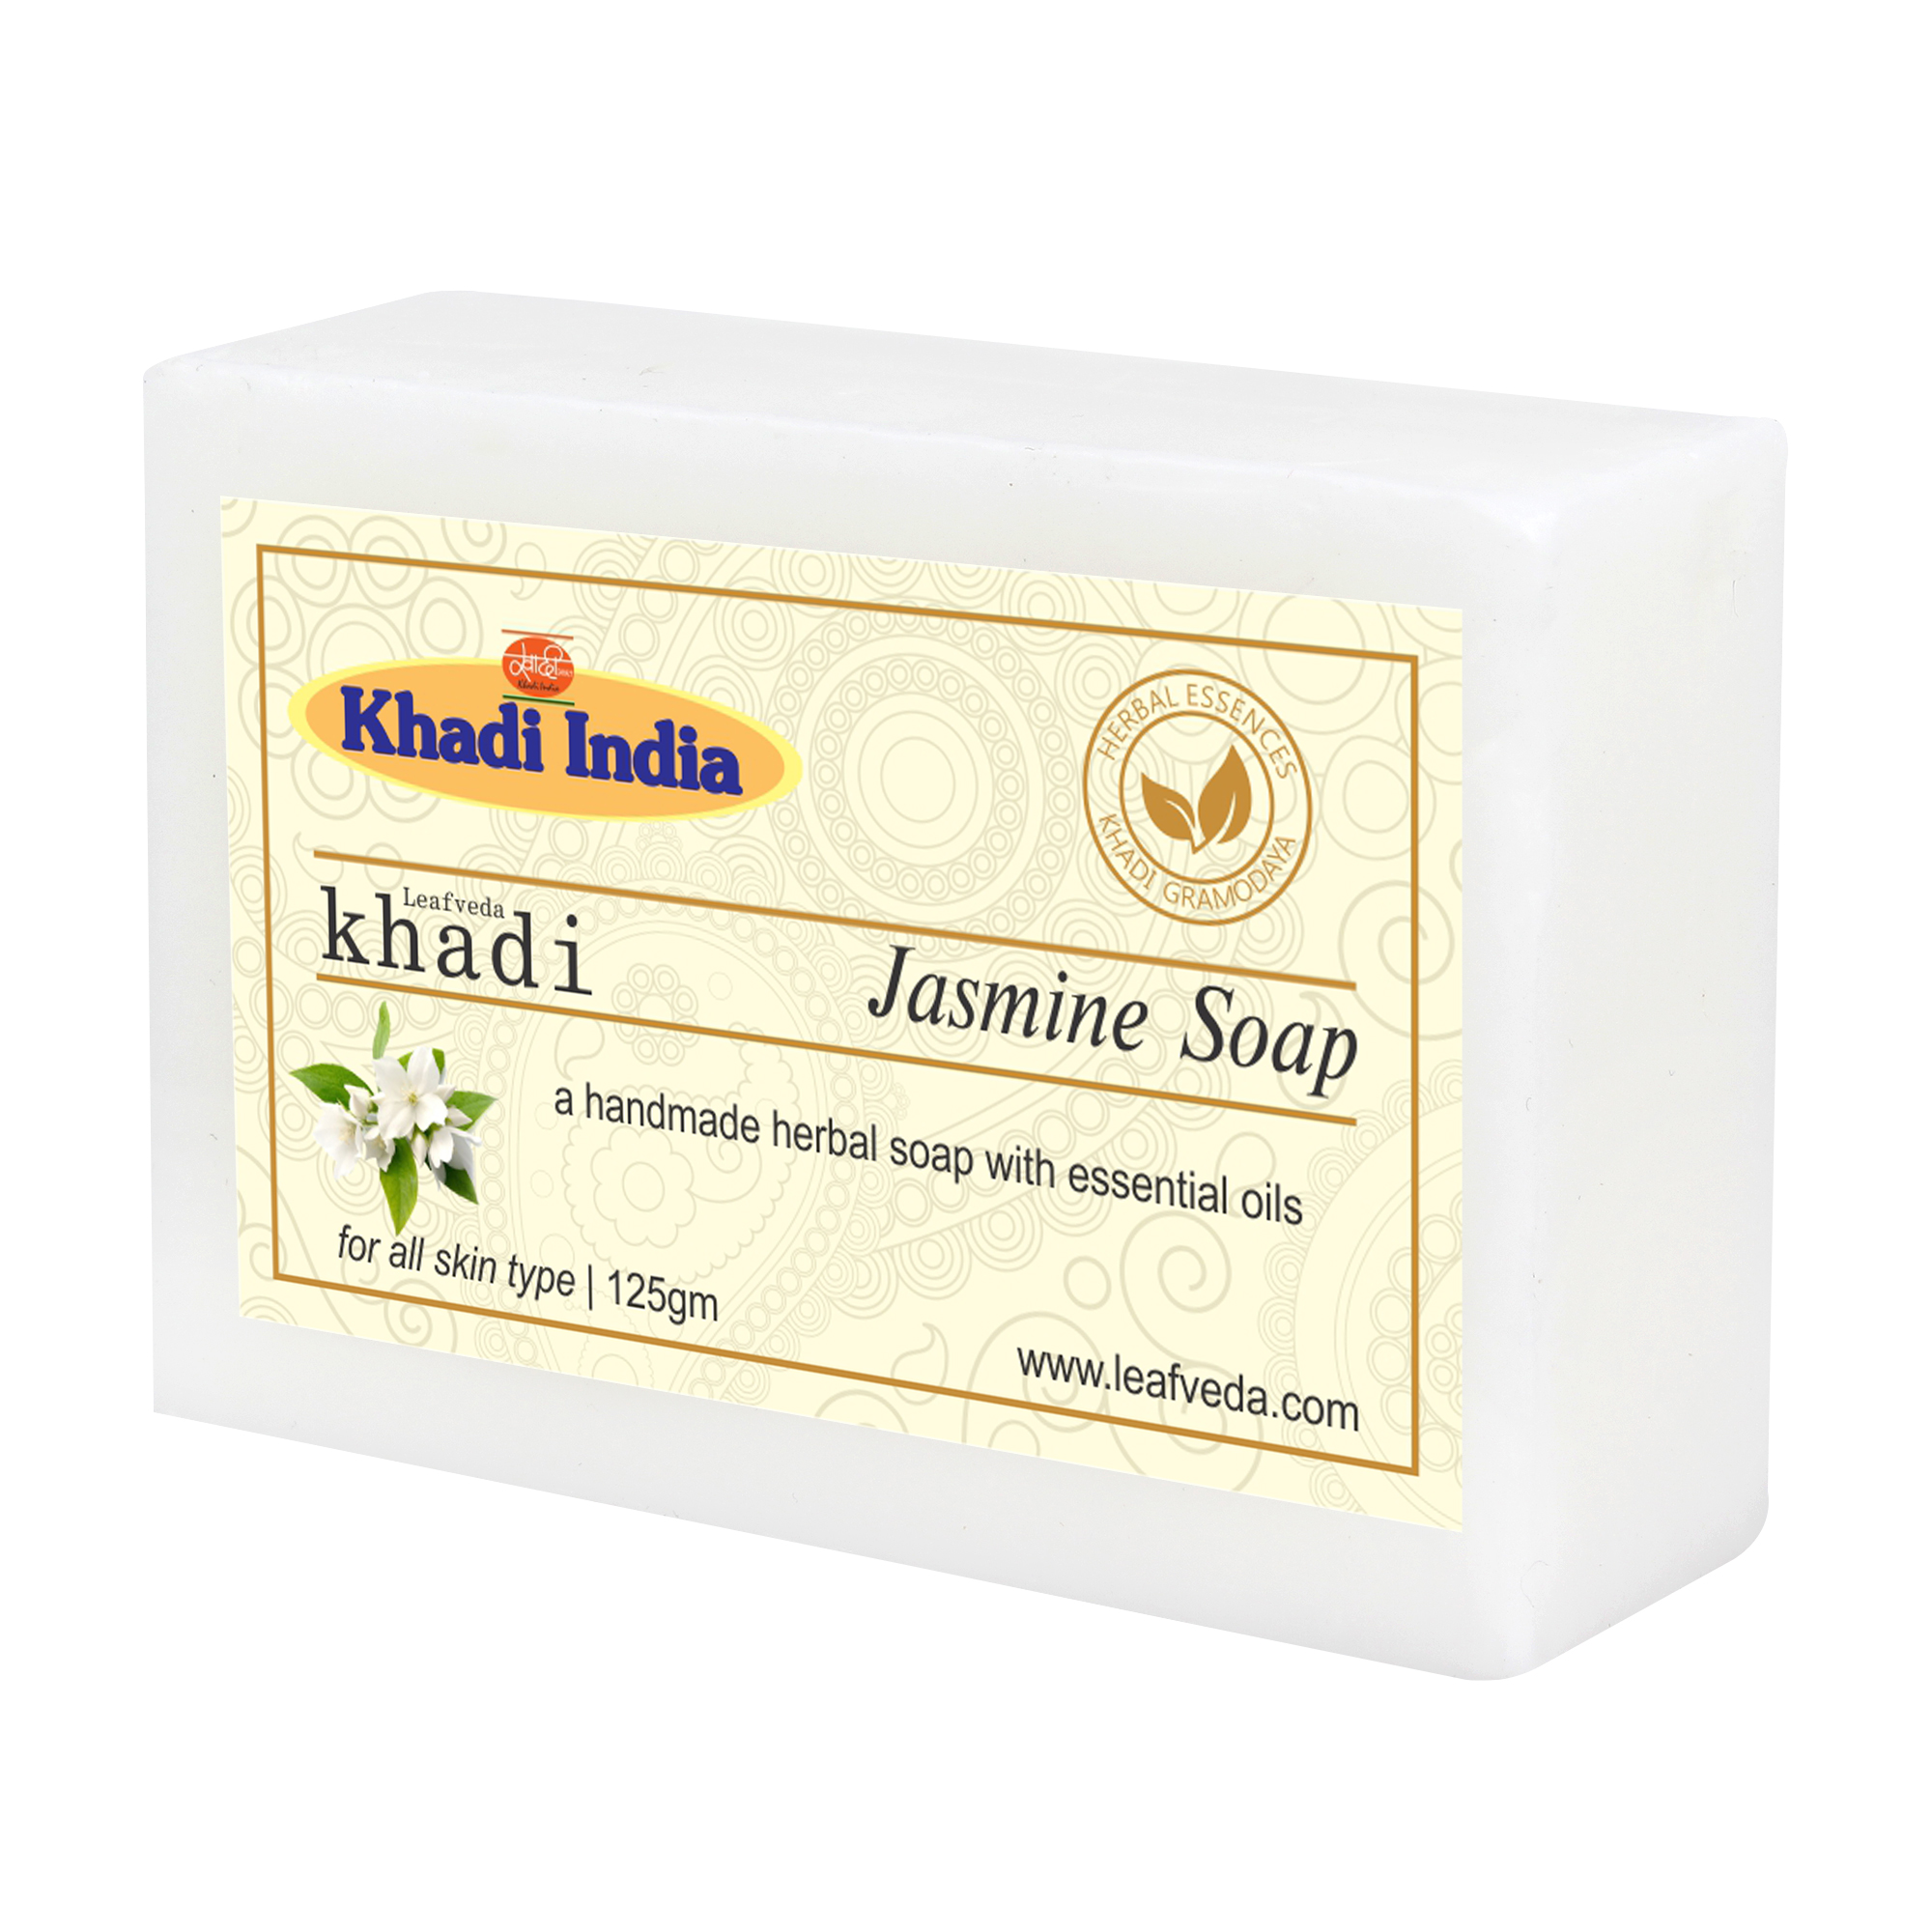 Khadi Leafveda Jasmine Soap